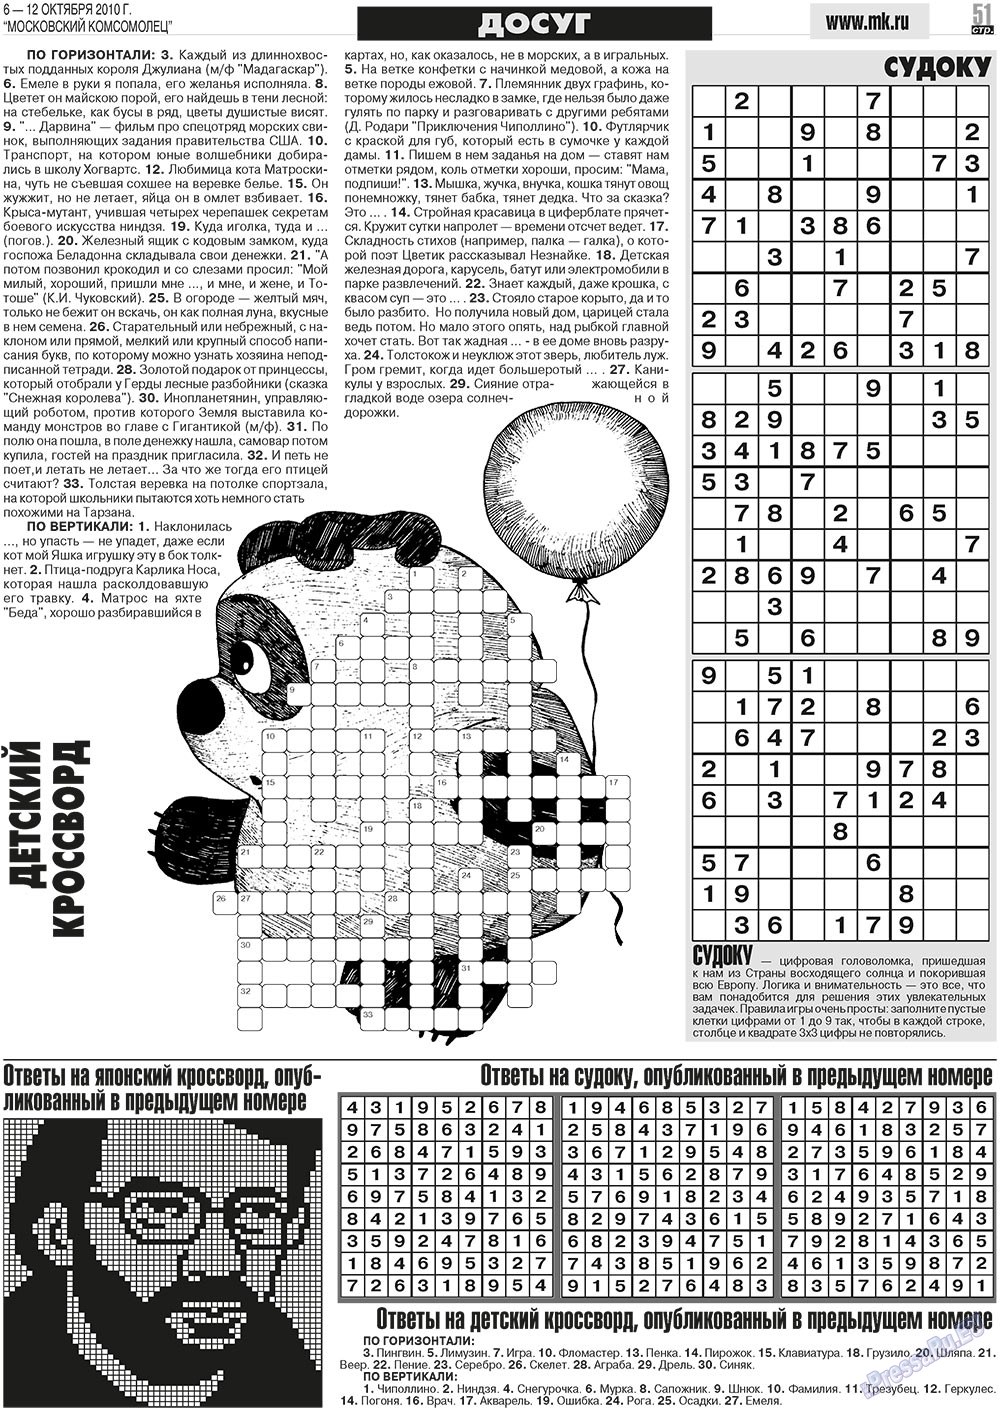 МК Испания, газета. 2010 №40 стр.51